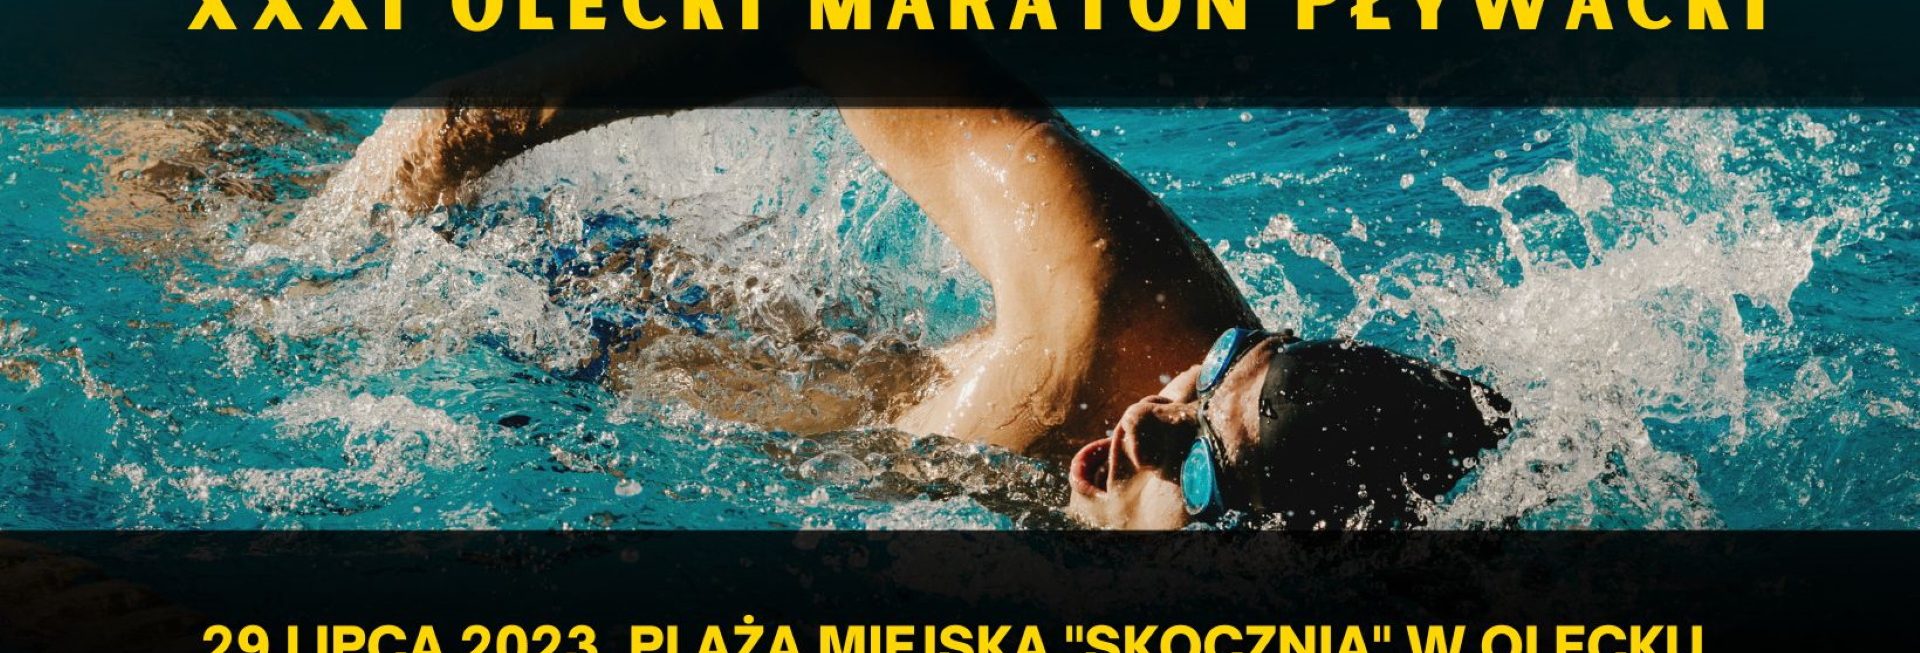 Plakat zapraszający w sobotę 29 lipca 2023 r. do Olecka na Olecki Maraton Pływacki „DELPHIA SWIM” Olecko 2023.